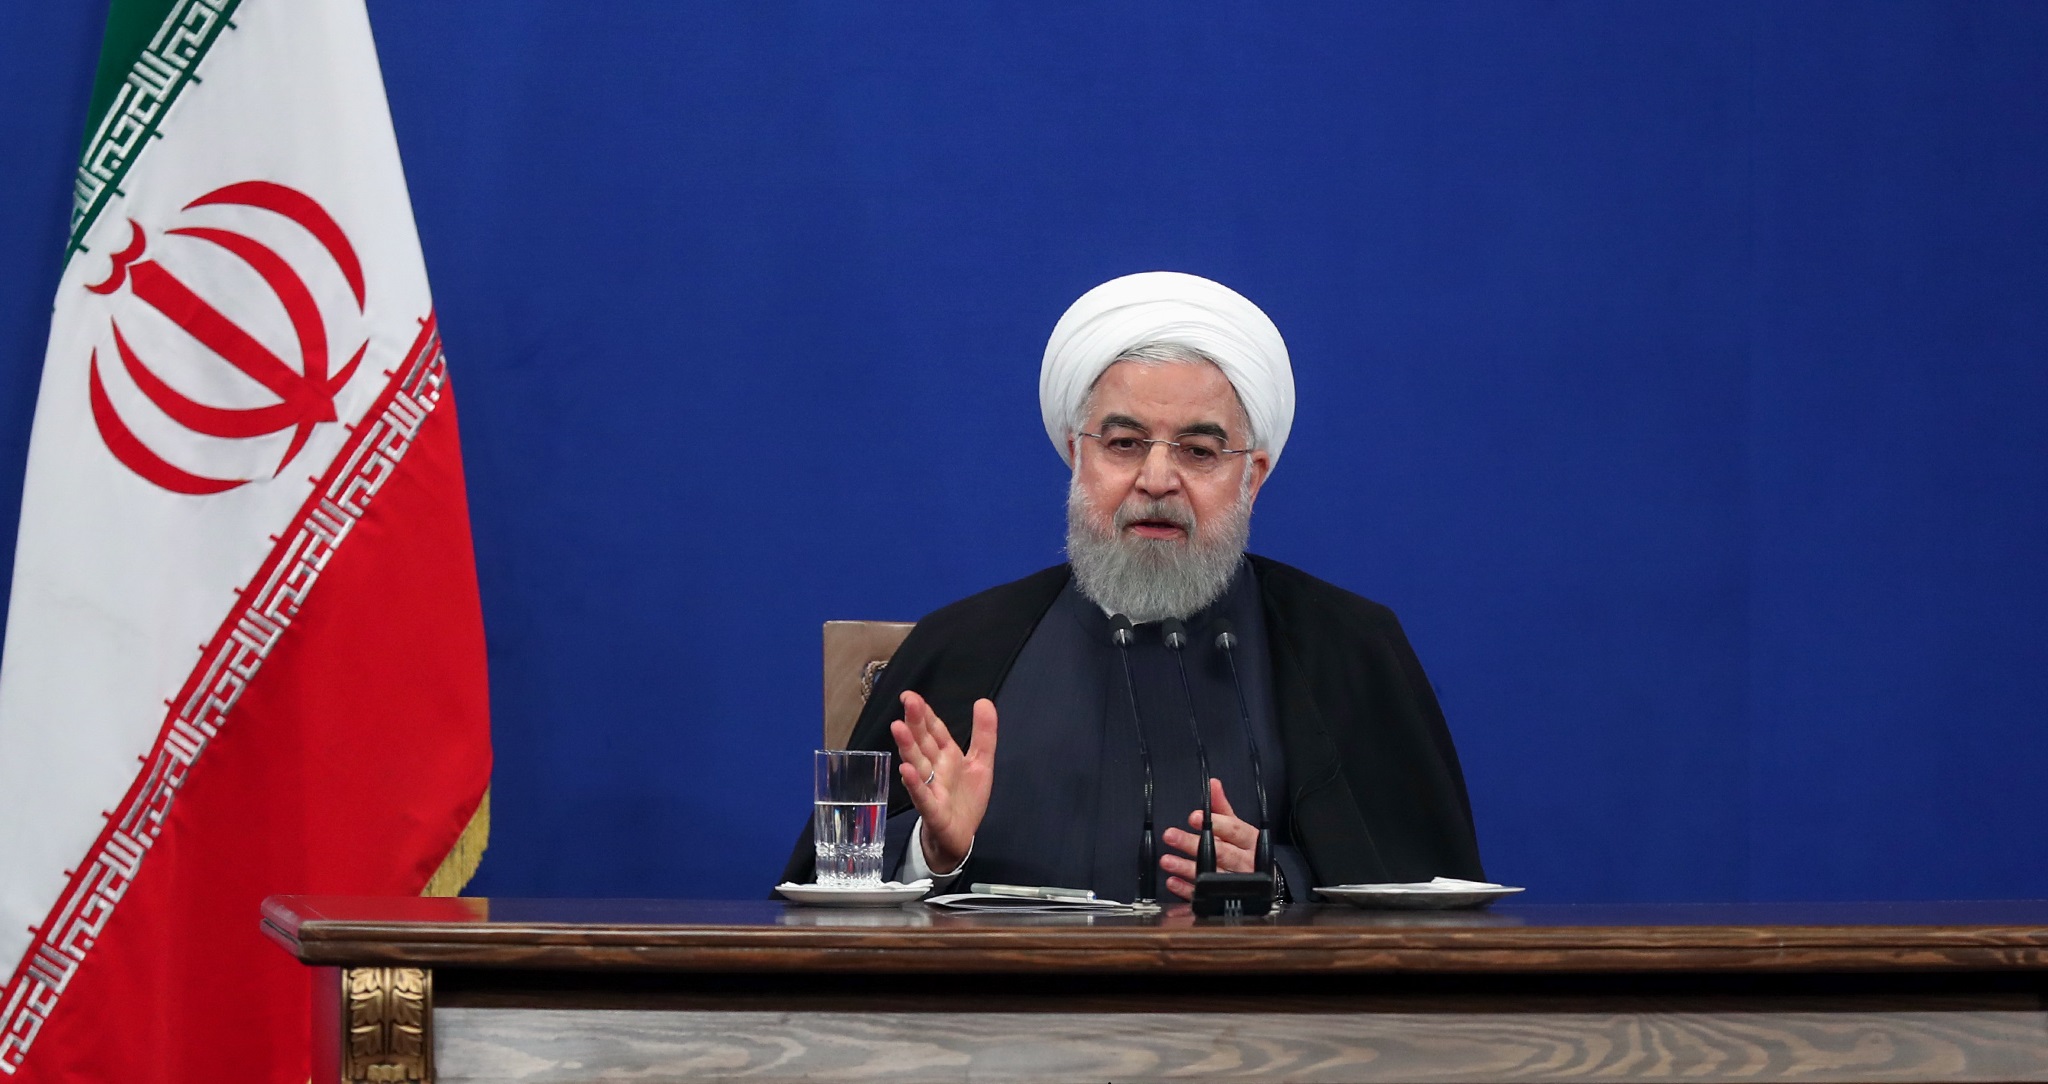 روحانی: هر وقت آمریکا تحریم‌ها را لغو کرد، مذاکره می‌کنیم| از شرایط بحرانی عبور کرده‌ایم| تورم از ۵۲ به ۳۴ درصد رسیده| رکورد اشتغال در تابستان امسال| نمی‌خواهیم قیمت سوخت را بالا ببریم